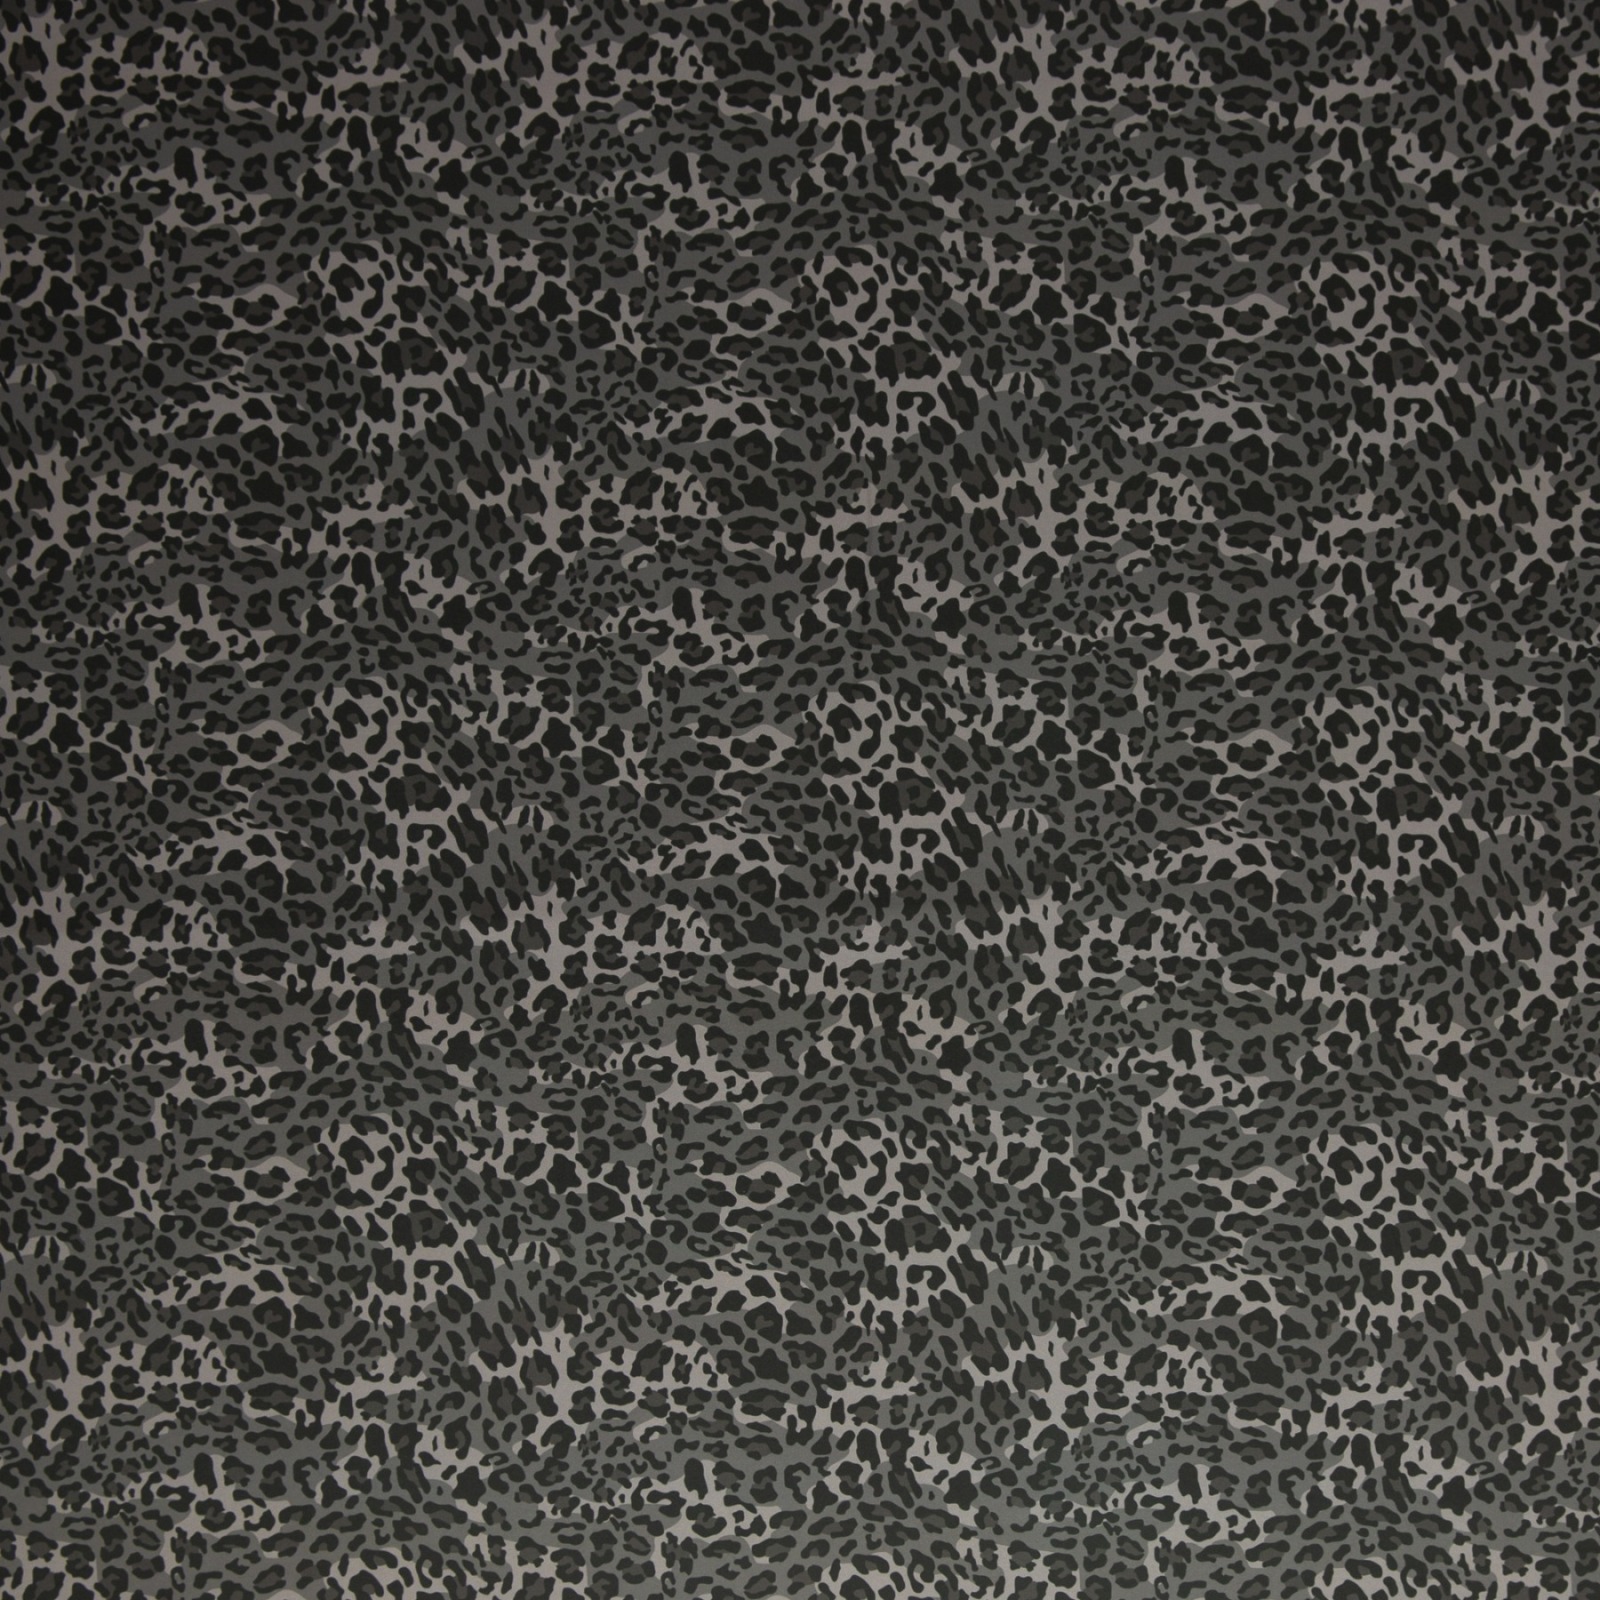 05m Softshell Fietje Leao Print schwarz grau 4